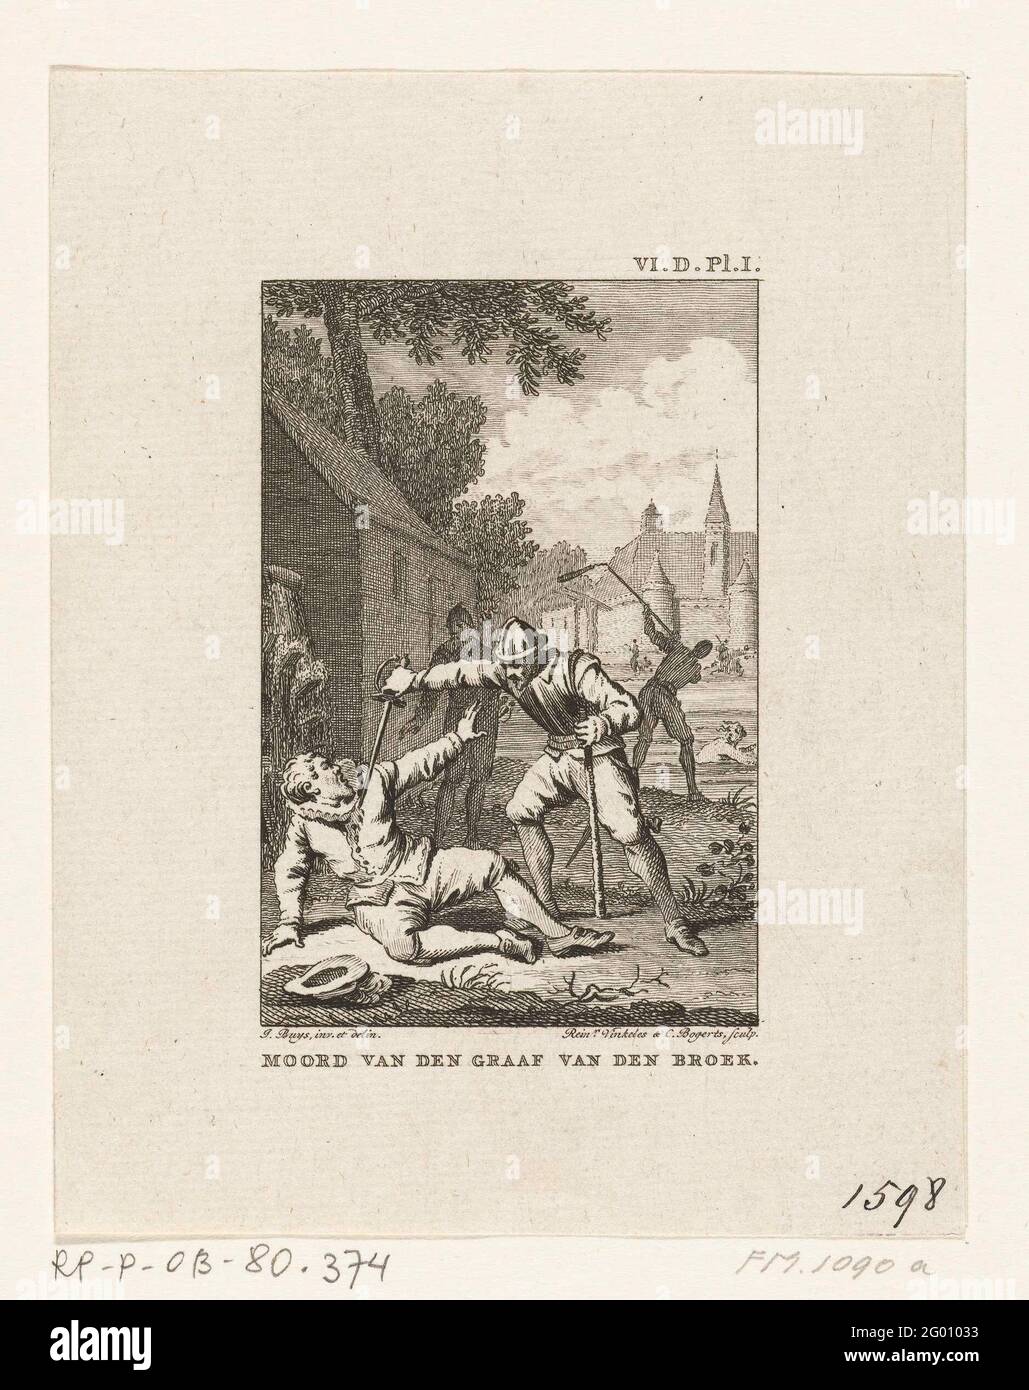 Mord an Wirich von Daun, Graf von Falkenstein, 1598; Mord an van den Graaf van den Broek. Der Mord an dem Wirich von Daun, Graf von Falkenstein, durch die spanischen Truppen unter Francisco de Mendoza am 11. Oktober 1598. Stockfoto